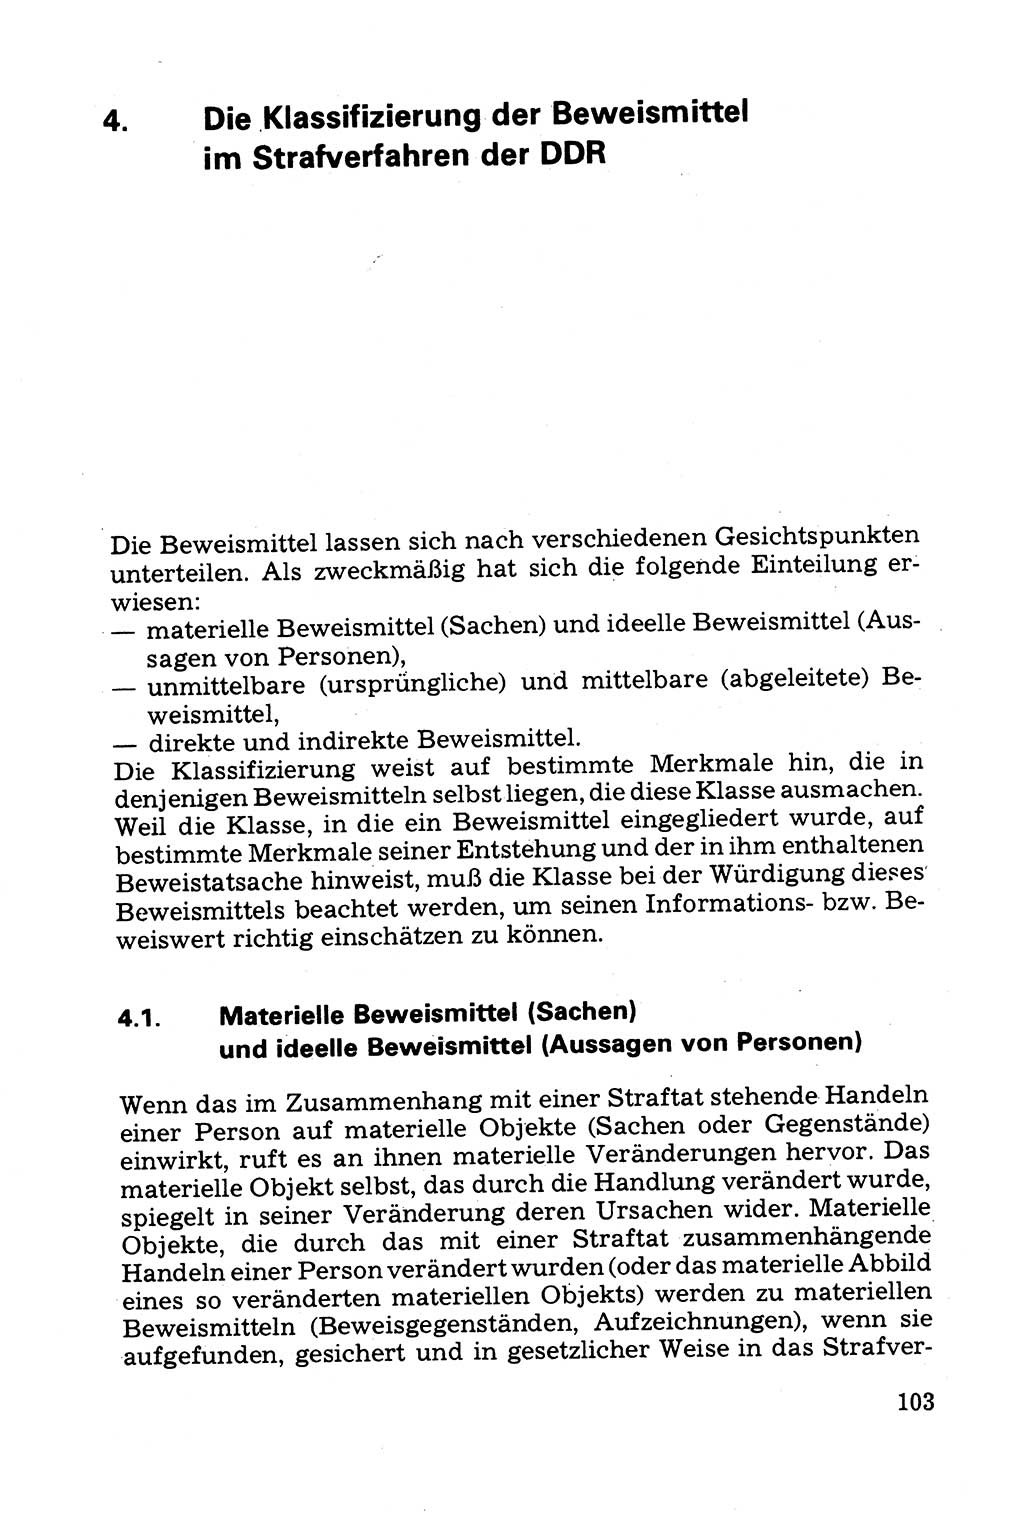 Grundfragen der Beweisführung im Ermittlungsverfahren [Deutsche Demokratische Republik (DDR)] 1980, Seite 103 (Bws.-Fhrg. EV DDR 1980, S. 103)